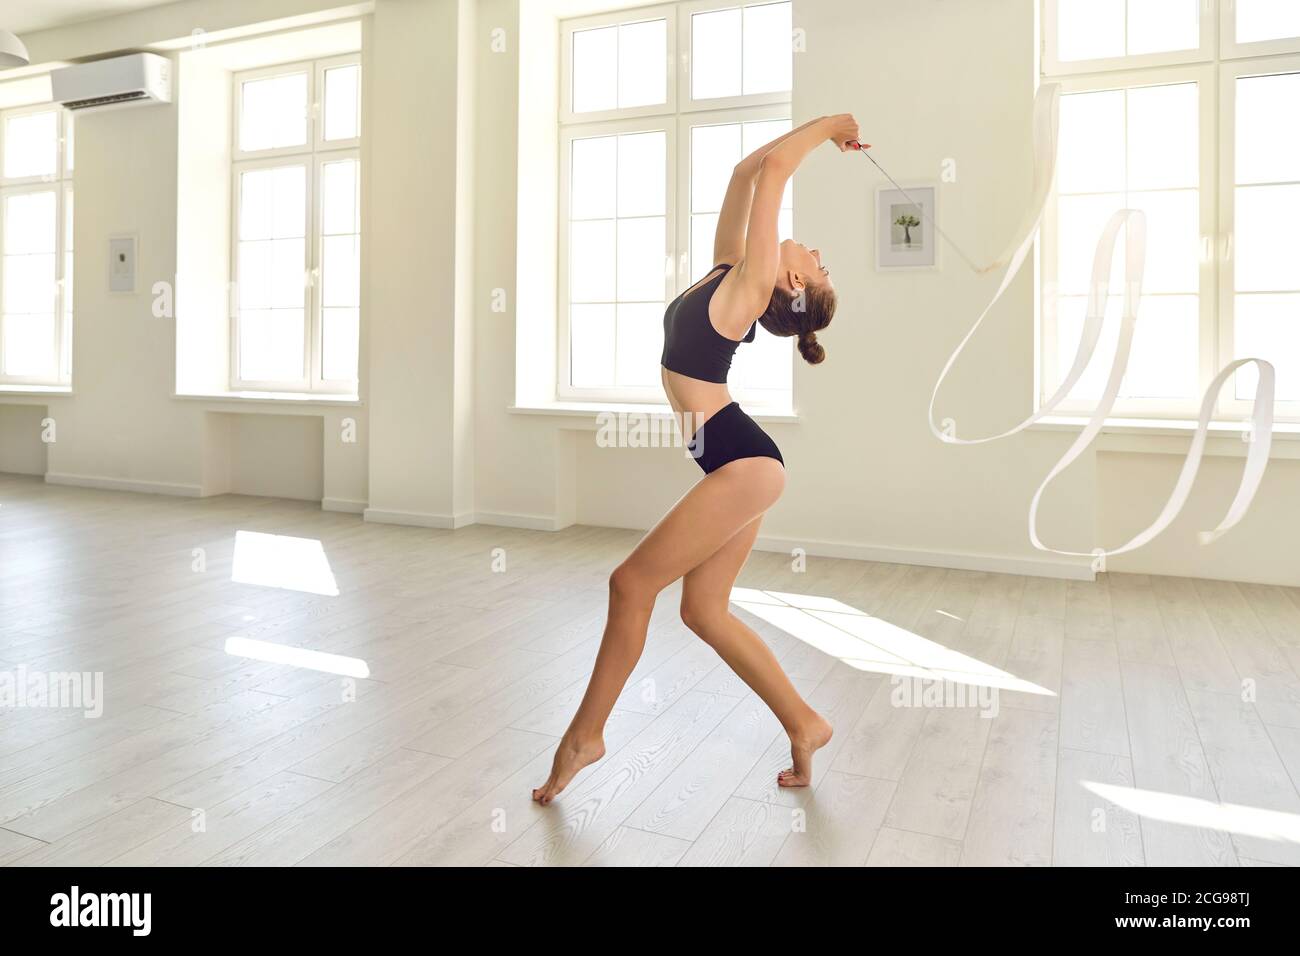 Jeune fille gracieuse de gymnaste avec ruban blanc répétant des éléments de gymnastique dans un studio moderne Banque D'Images